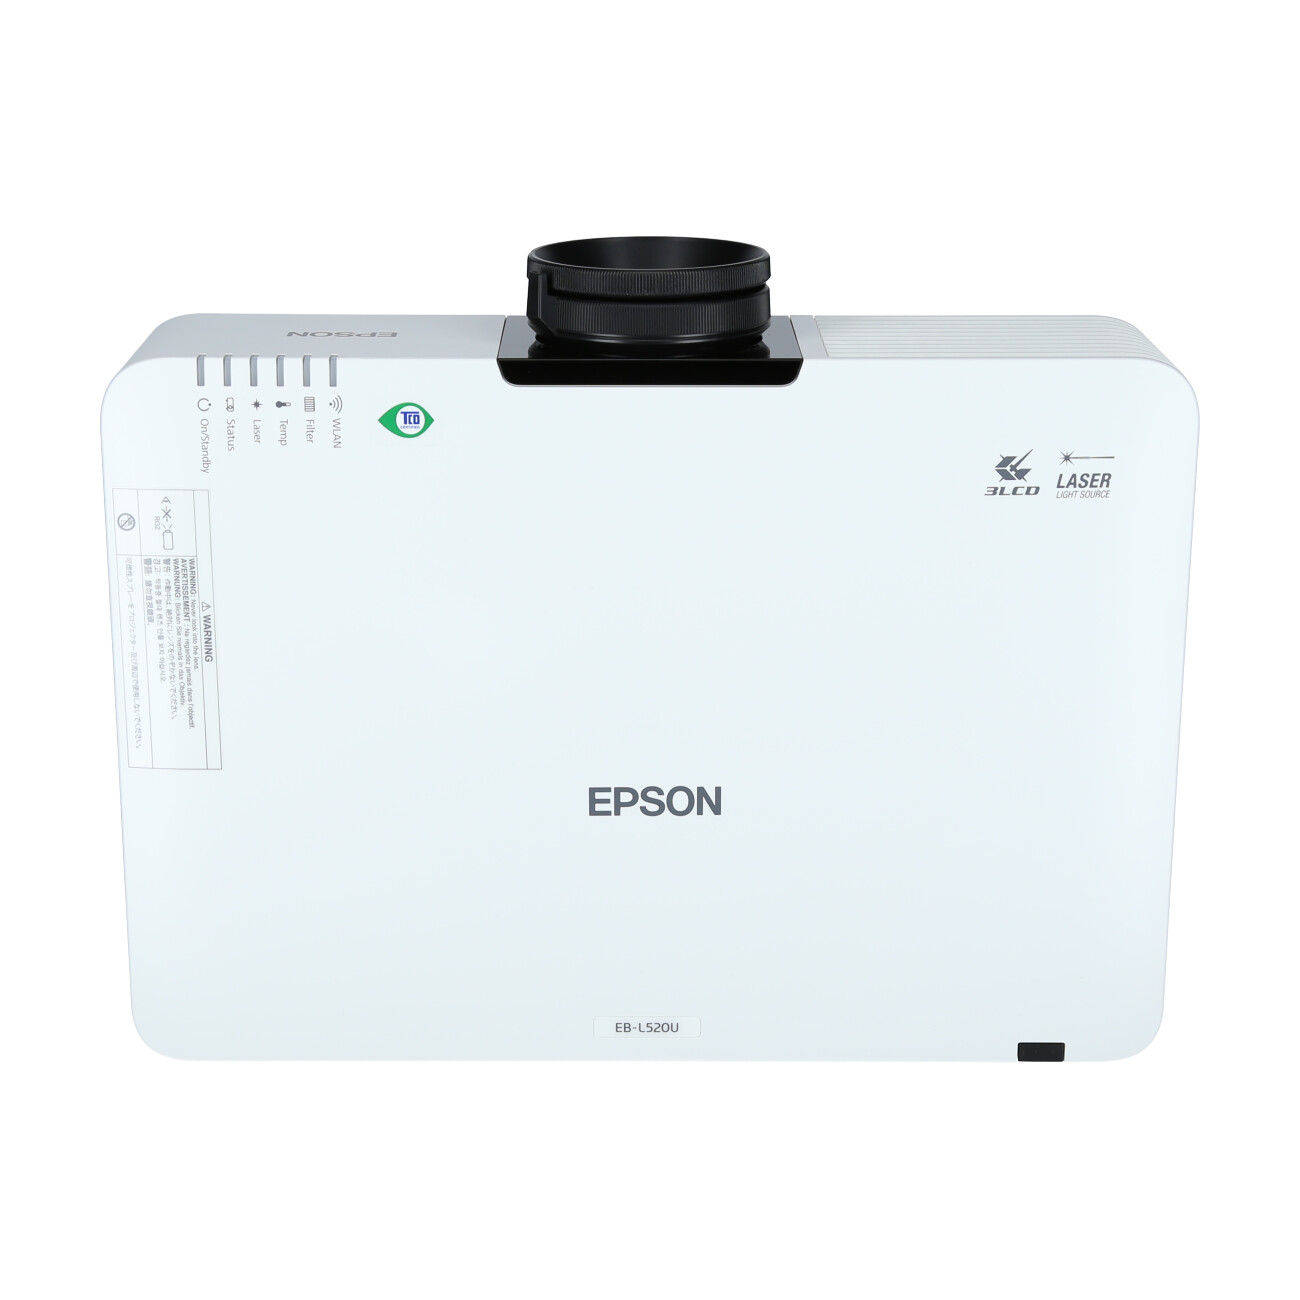 Epson-EB-L520U-Demo